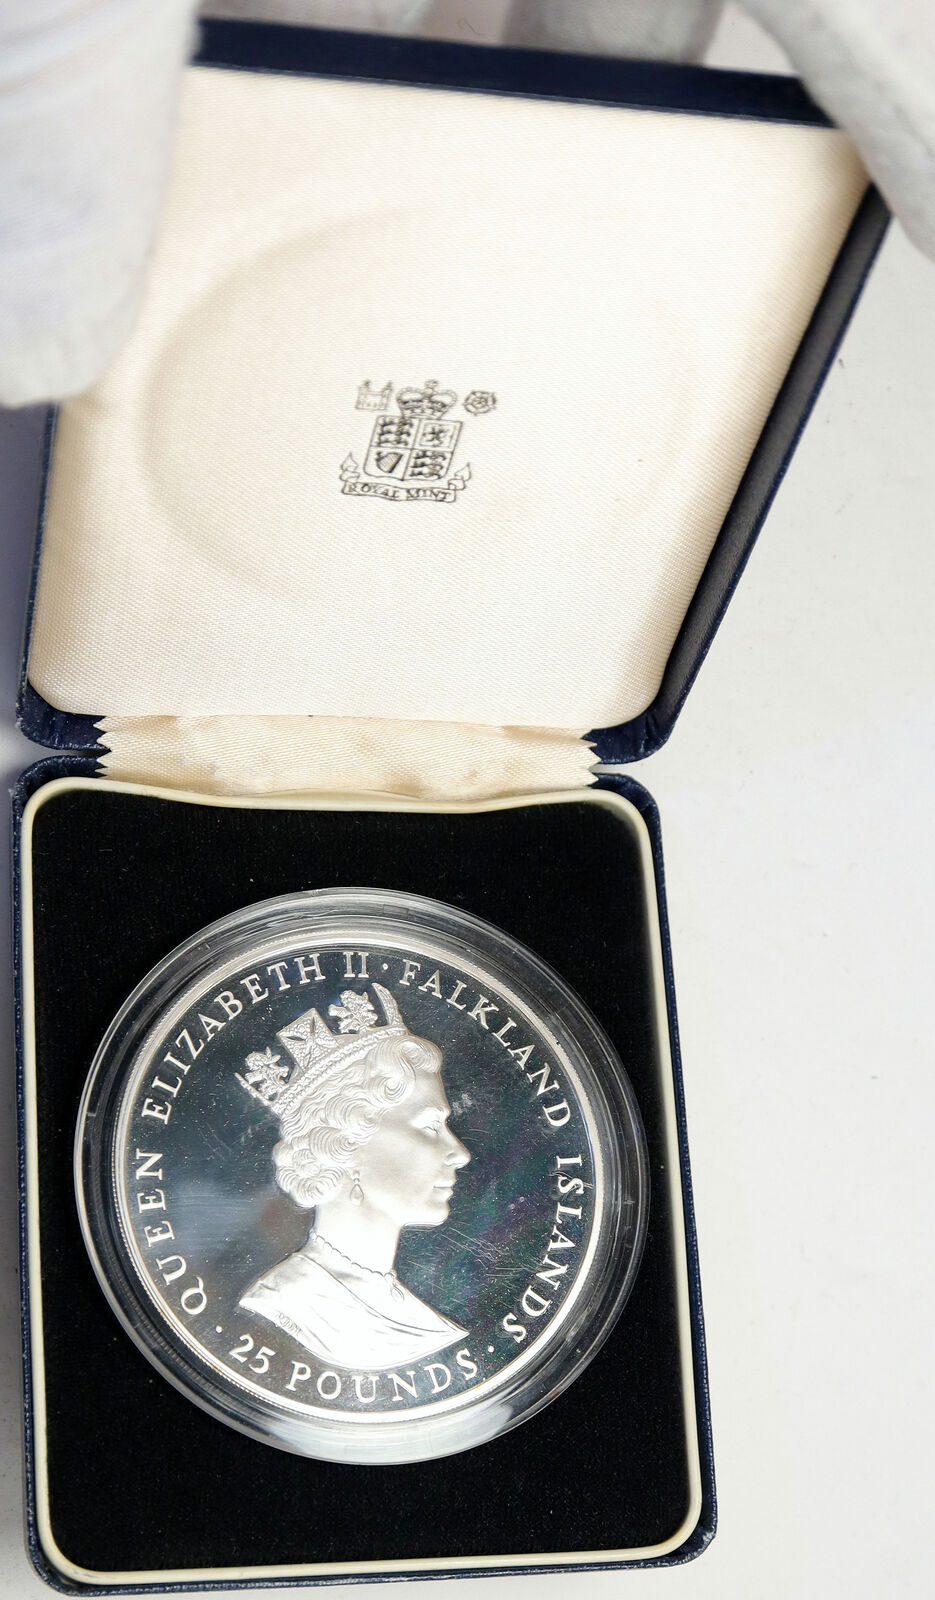 1986 FALKLAND ISLANDS Elizabeth II Royal WEDDING Proof Silver 25 Pnd Coin i88194